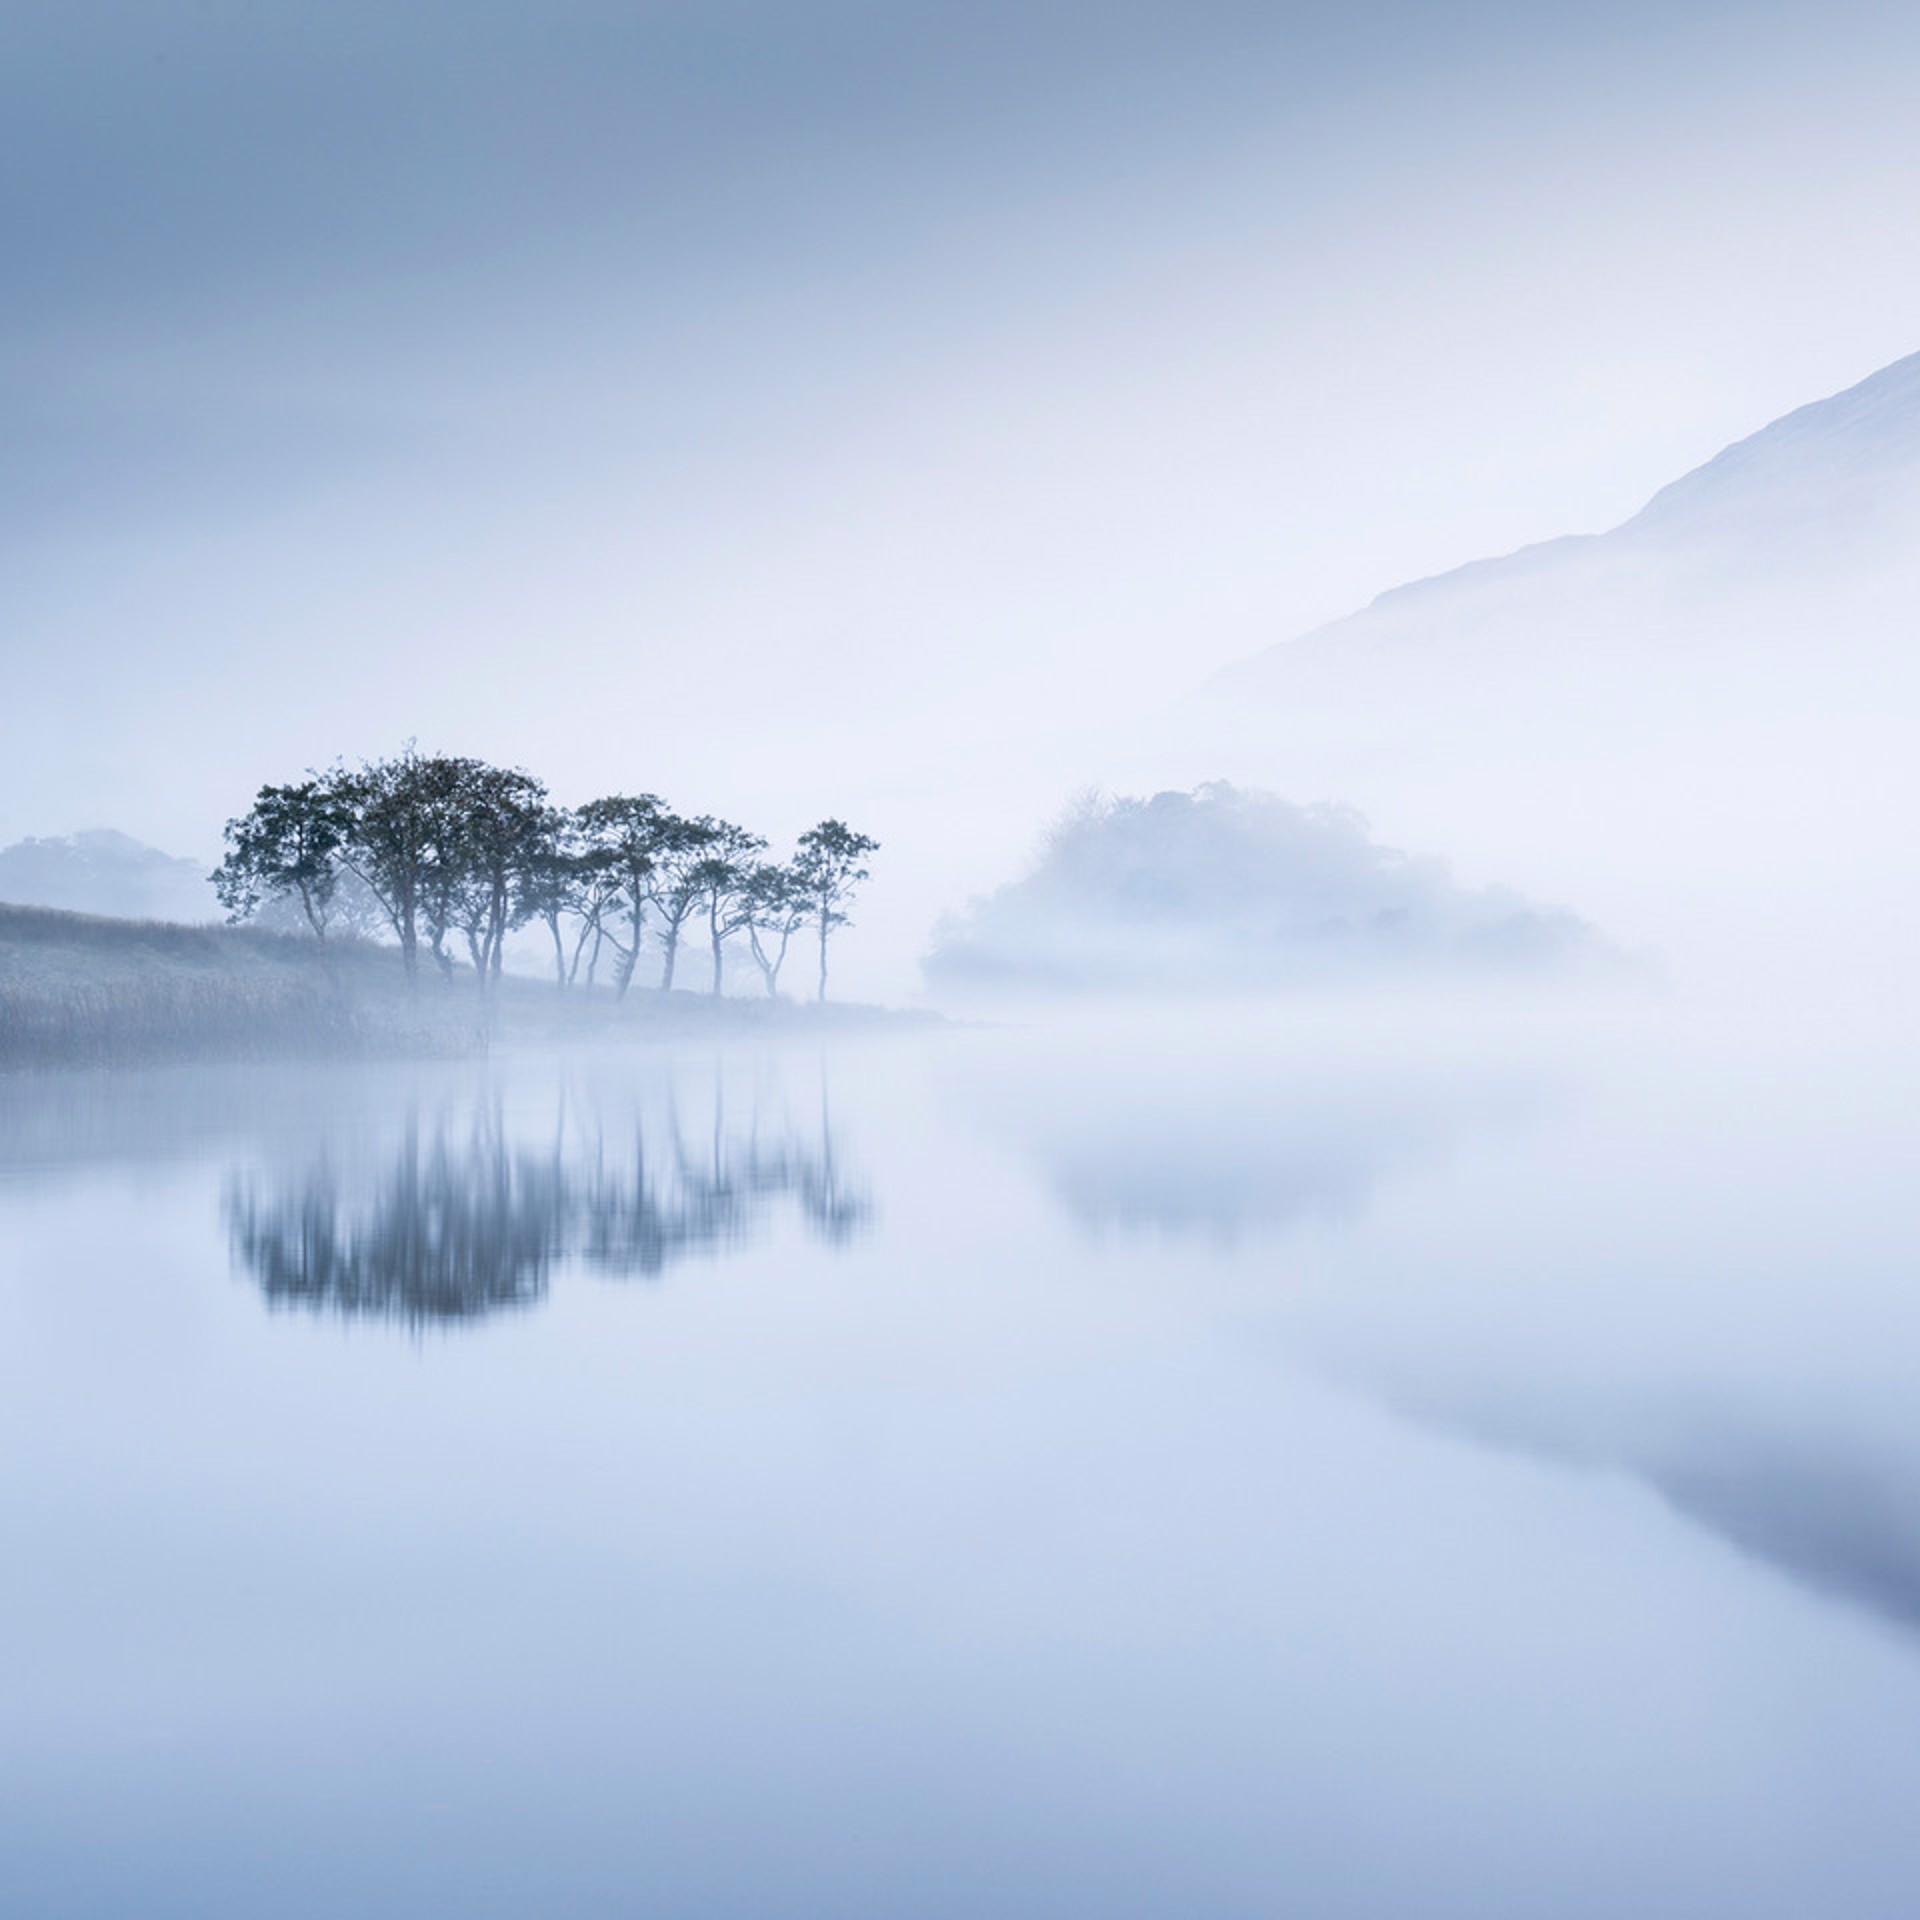 Loch Awe, Scotland 2015 by Jean-Michel Lenoir